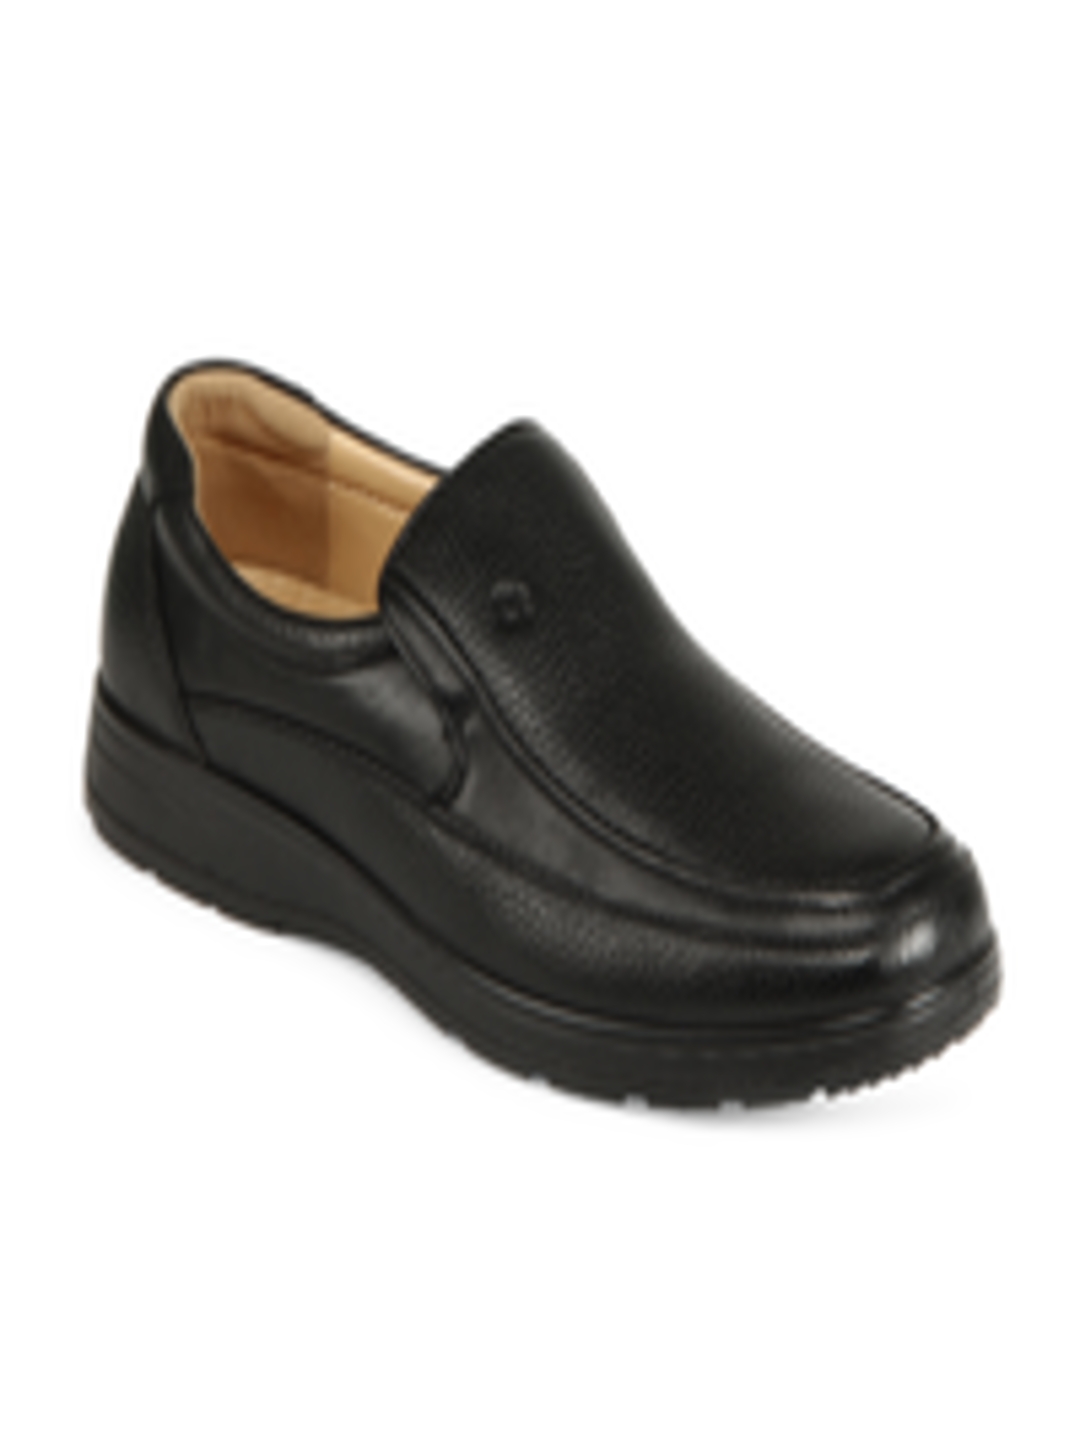 Buy Samsonite Men Black Comfort Formal Shoes - Formal Shoes for Men ...